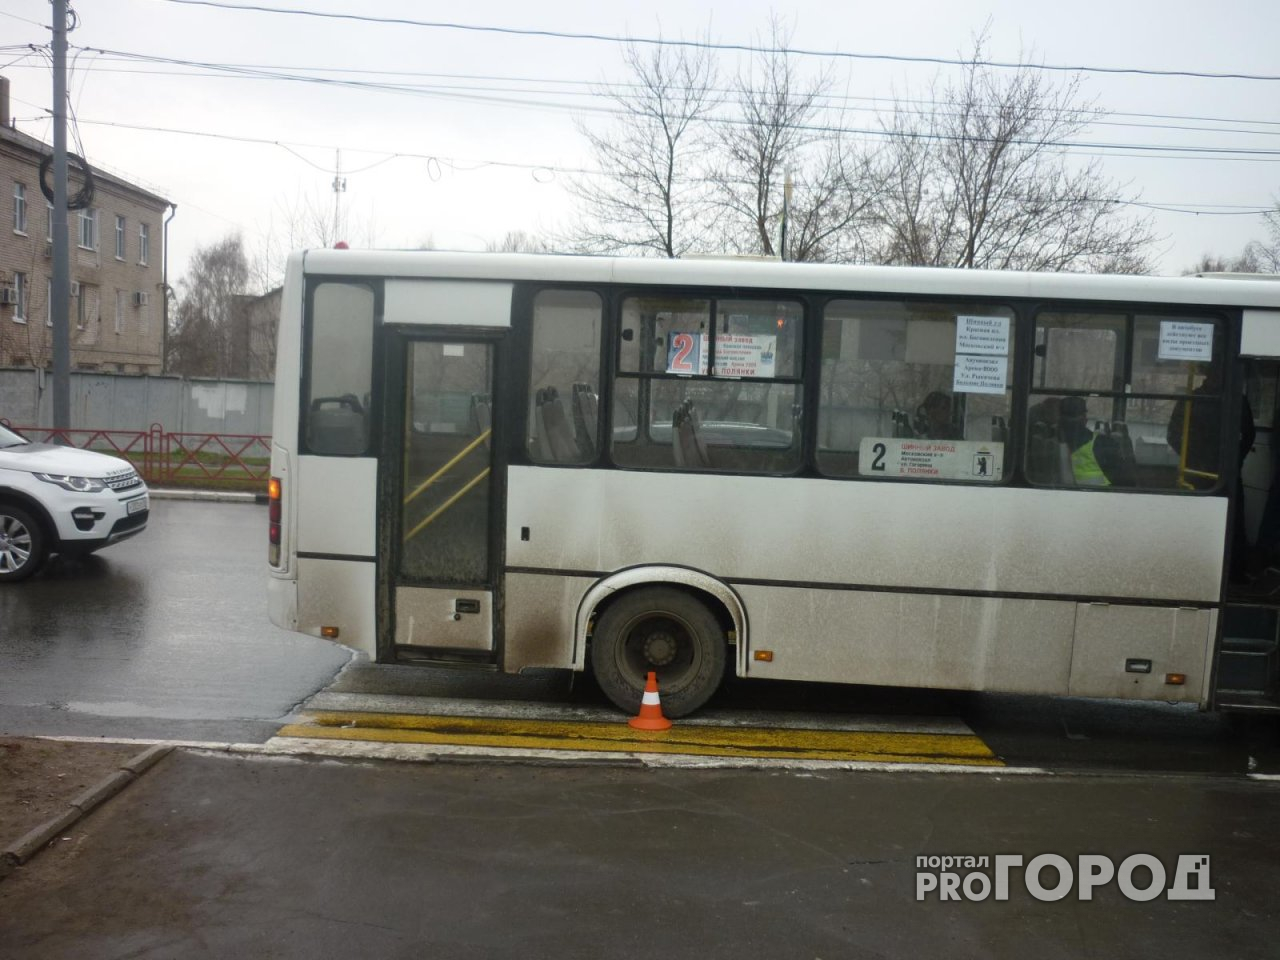 В Ярославле водитель автобуса поехал на "красный" и сбил девушку: подробности ДТП